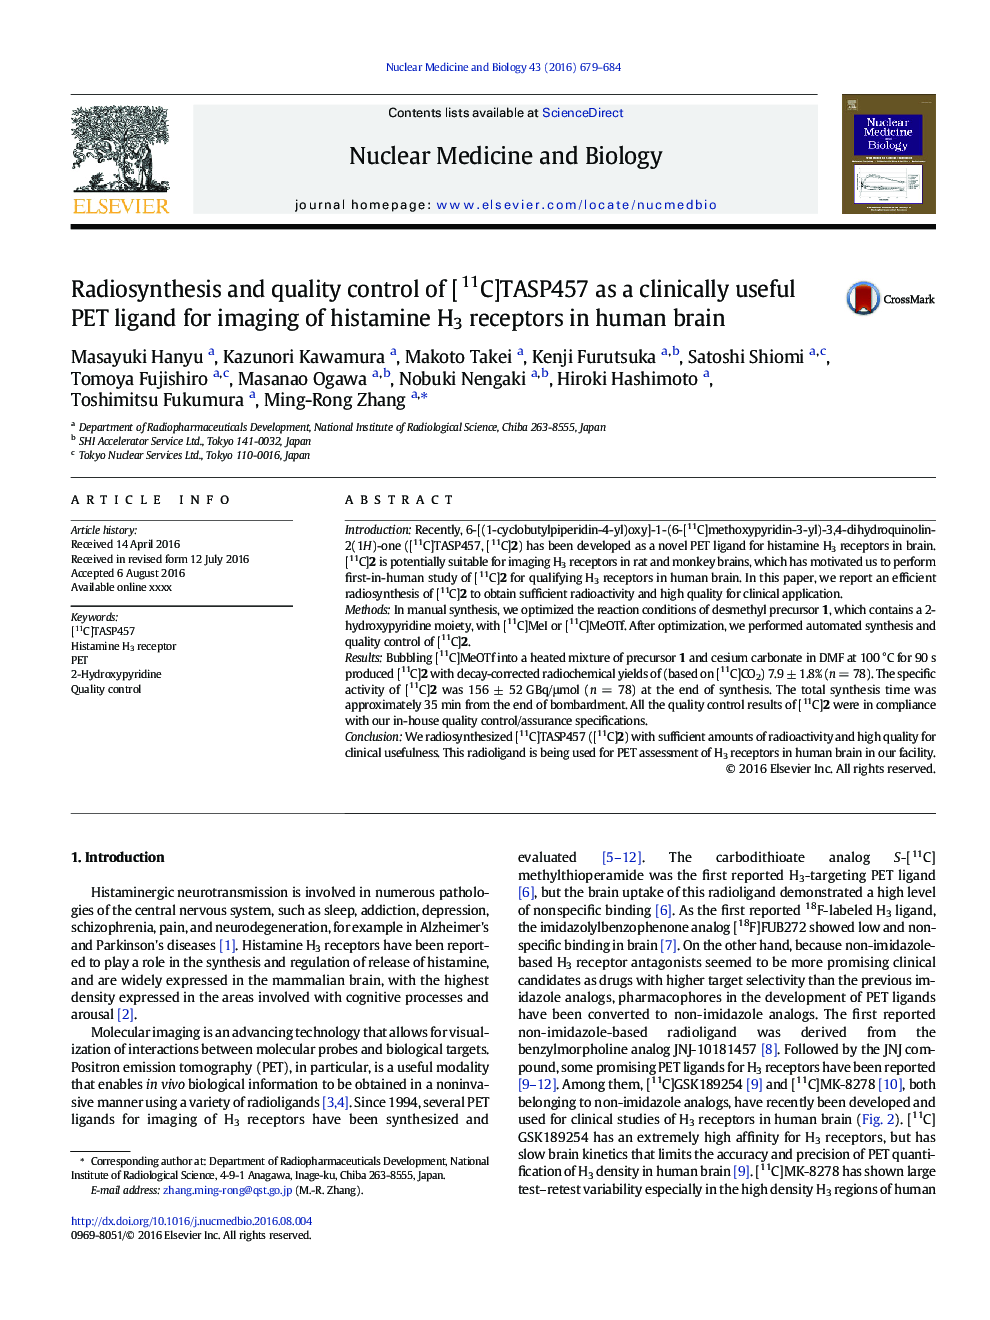 رادیوسنتز و کیفیت کنترل [11C] TASP457 به عنوان لیگاند PET بالینی مفید برای تصویربرداری از گیرنده های هیستامینی H3 در مغز انسان